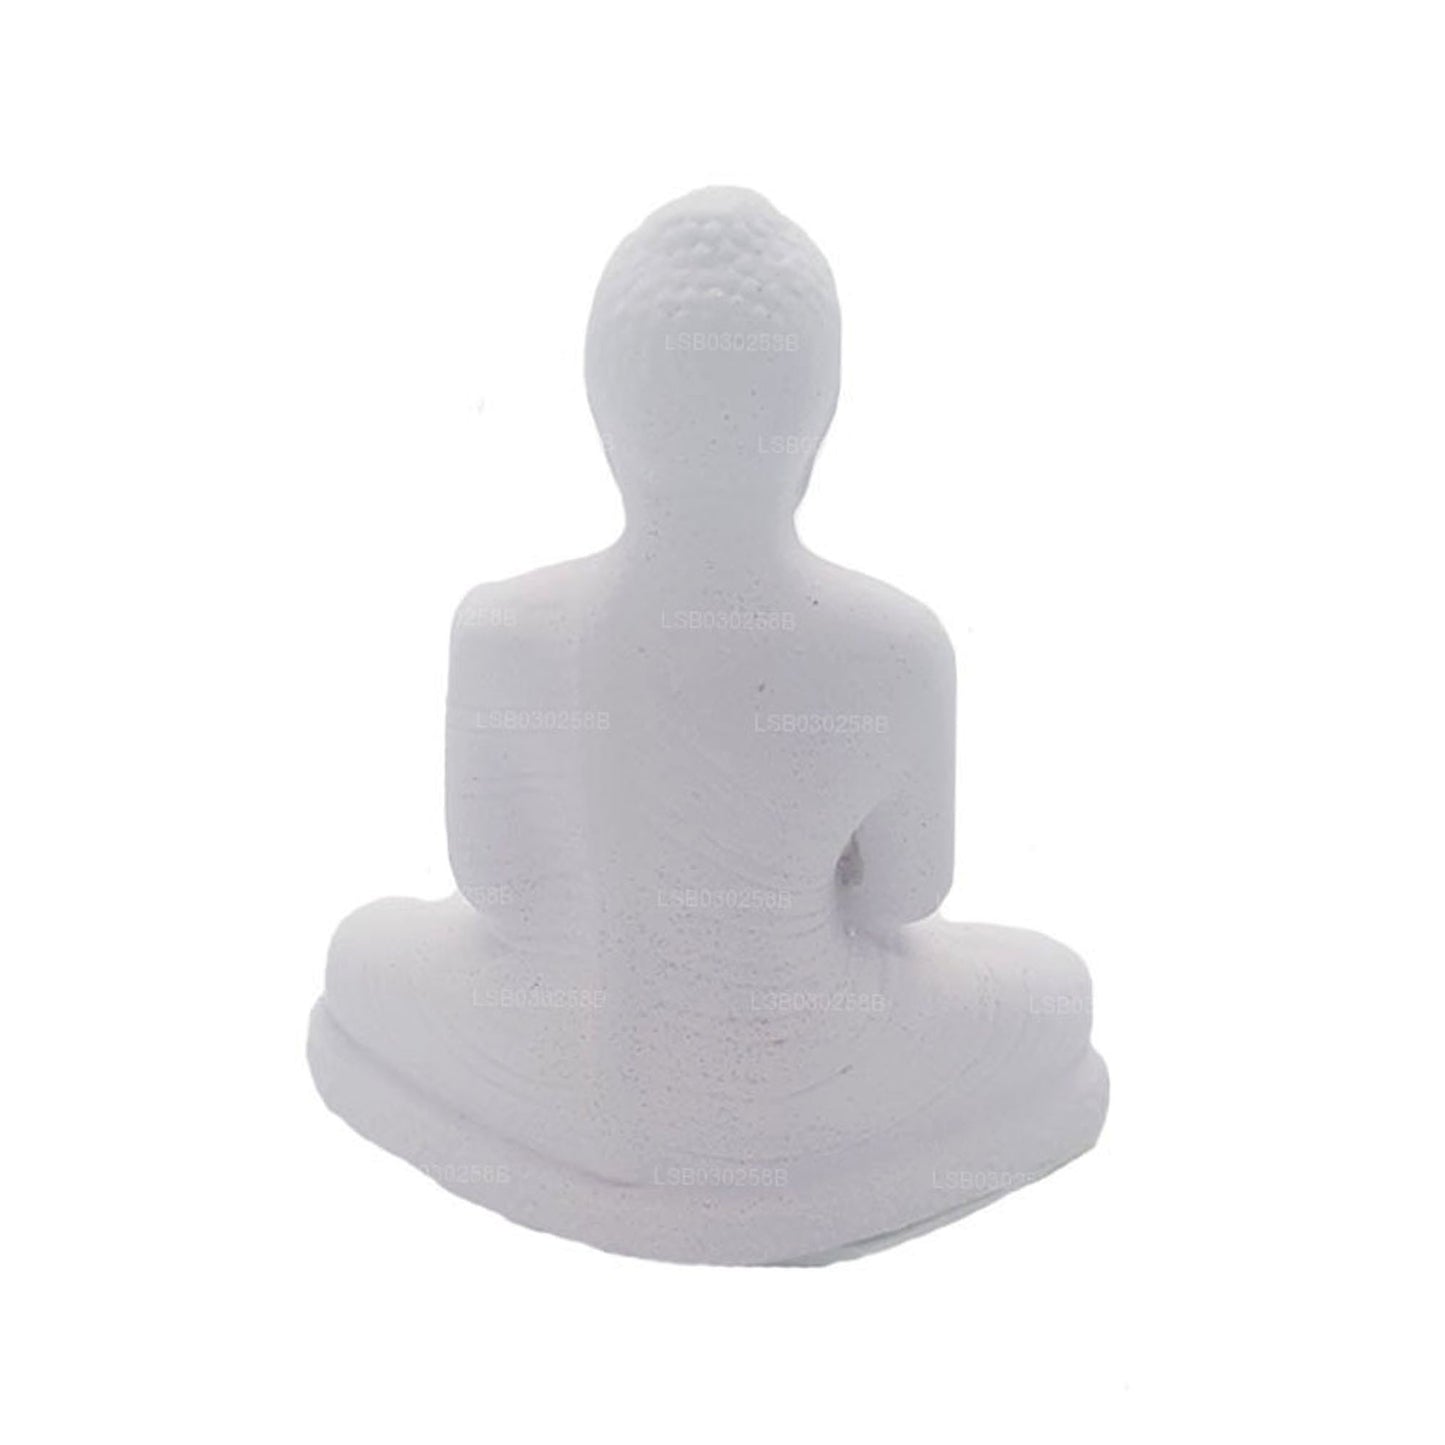 Статуя Будды (белый цвет) для приборной панели автомобиля (7 см x 3 см)